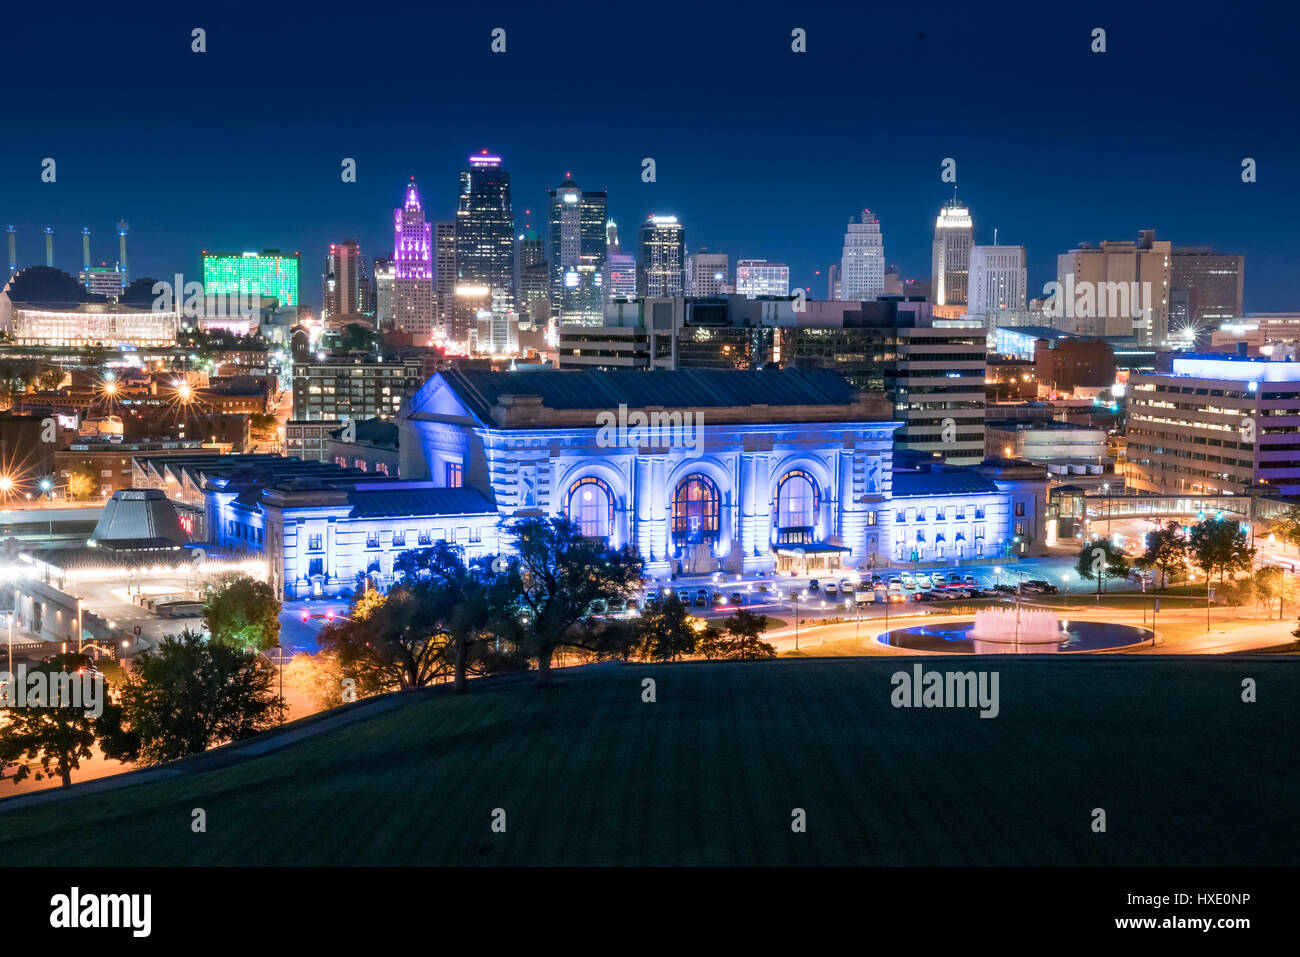 La notte dello skyline della città di Kansas City, Missouri con Union Station in primo piano Foto Stock